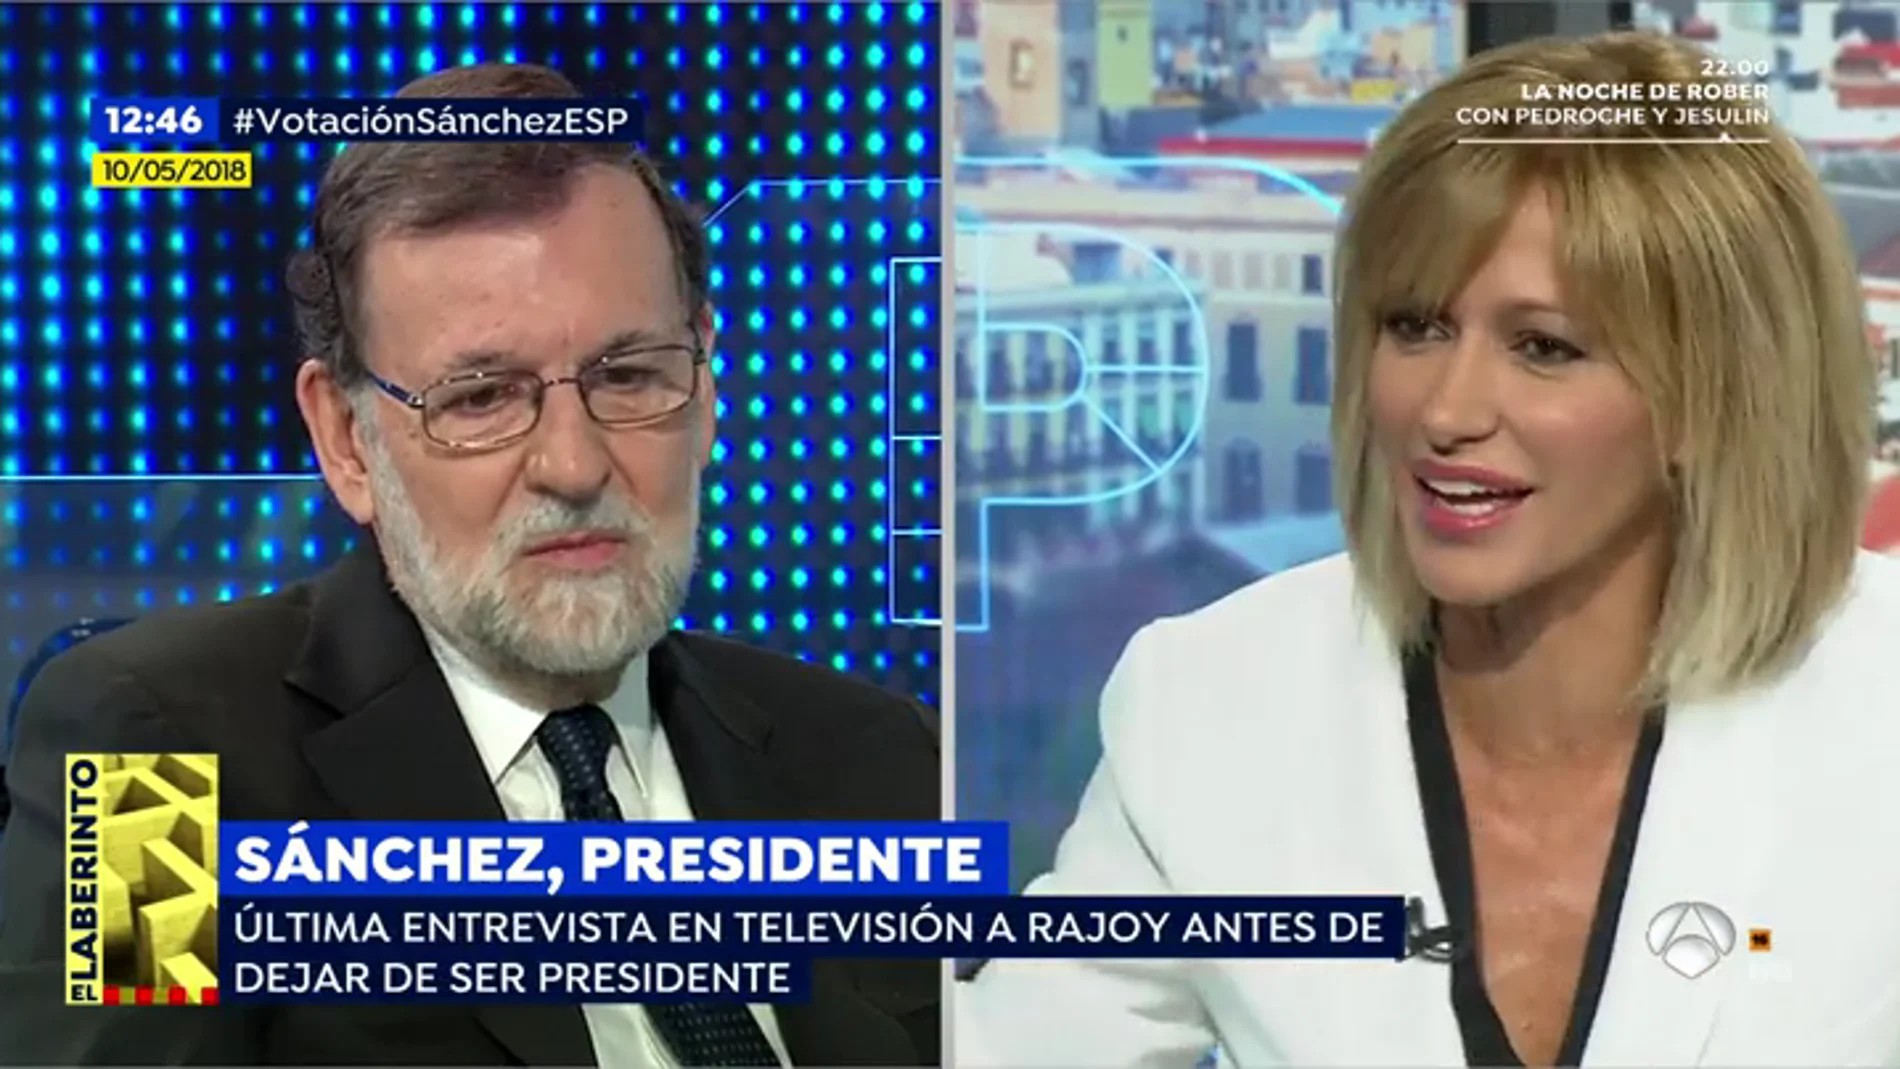 En su última entrevista en 'Espejo Público', la última en televisión, Rajoy se mostraba abierto a otra legislatura: "Me gusta trabajar por mi país"